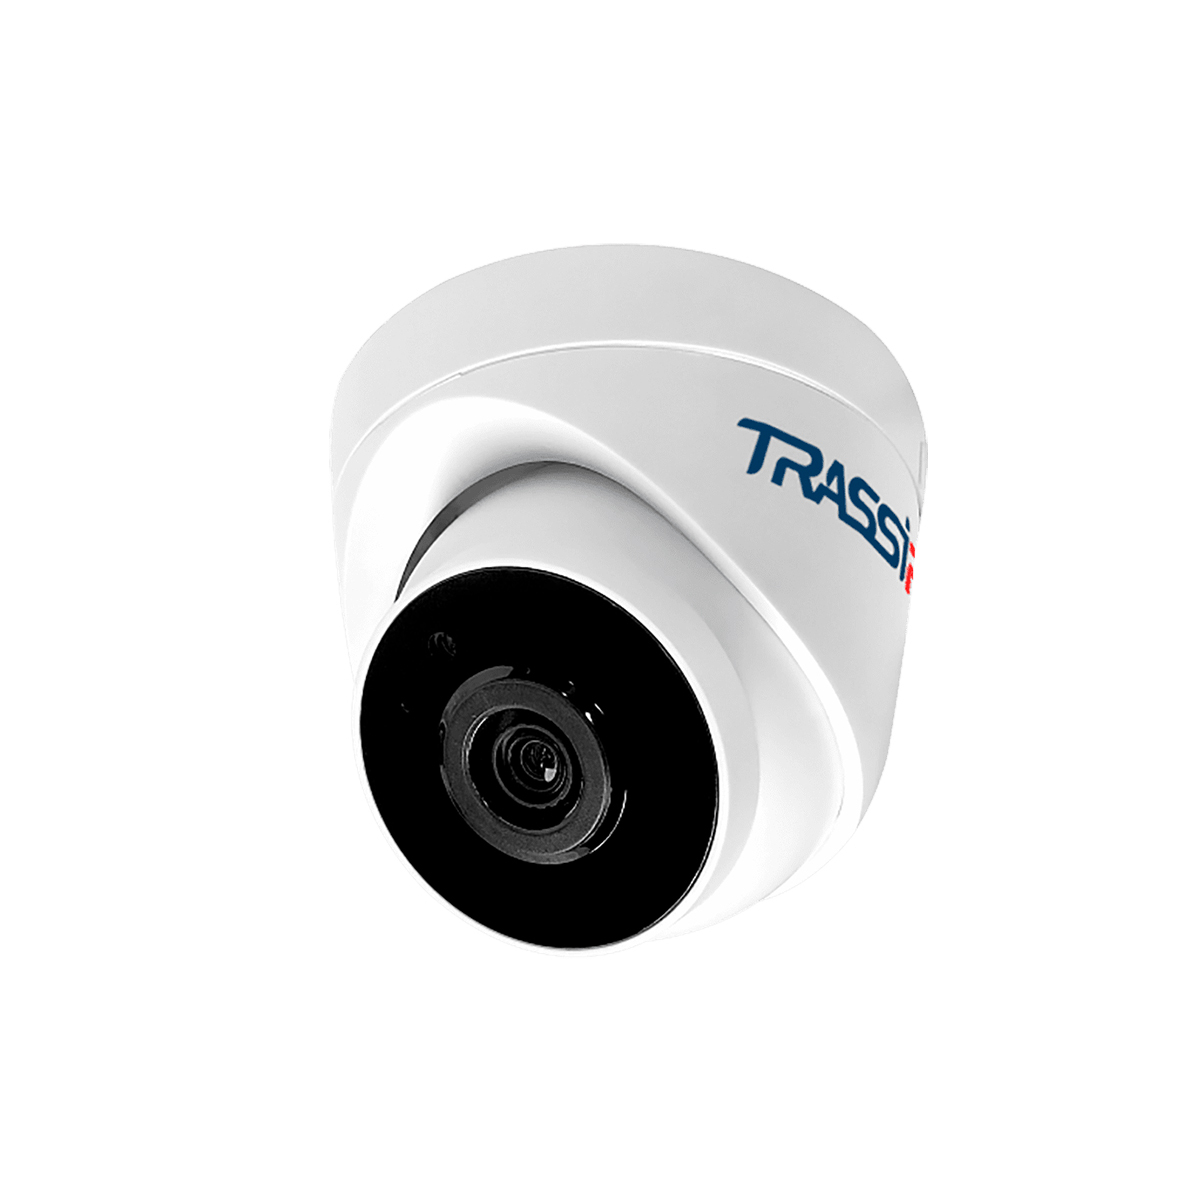 Черно белая камера видеонаблюдения. TRASSIR tr-d2123ir6. TRASSIR tr-d4d5 v2 (2.8 мм) 4 МП купольная видеокамера. IP-камера уличная 2мп 3.6 мм tr-d2d5 v2 (3.6 мм) TRASSIR. IP камера tr-d4151ir1.